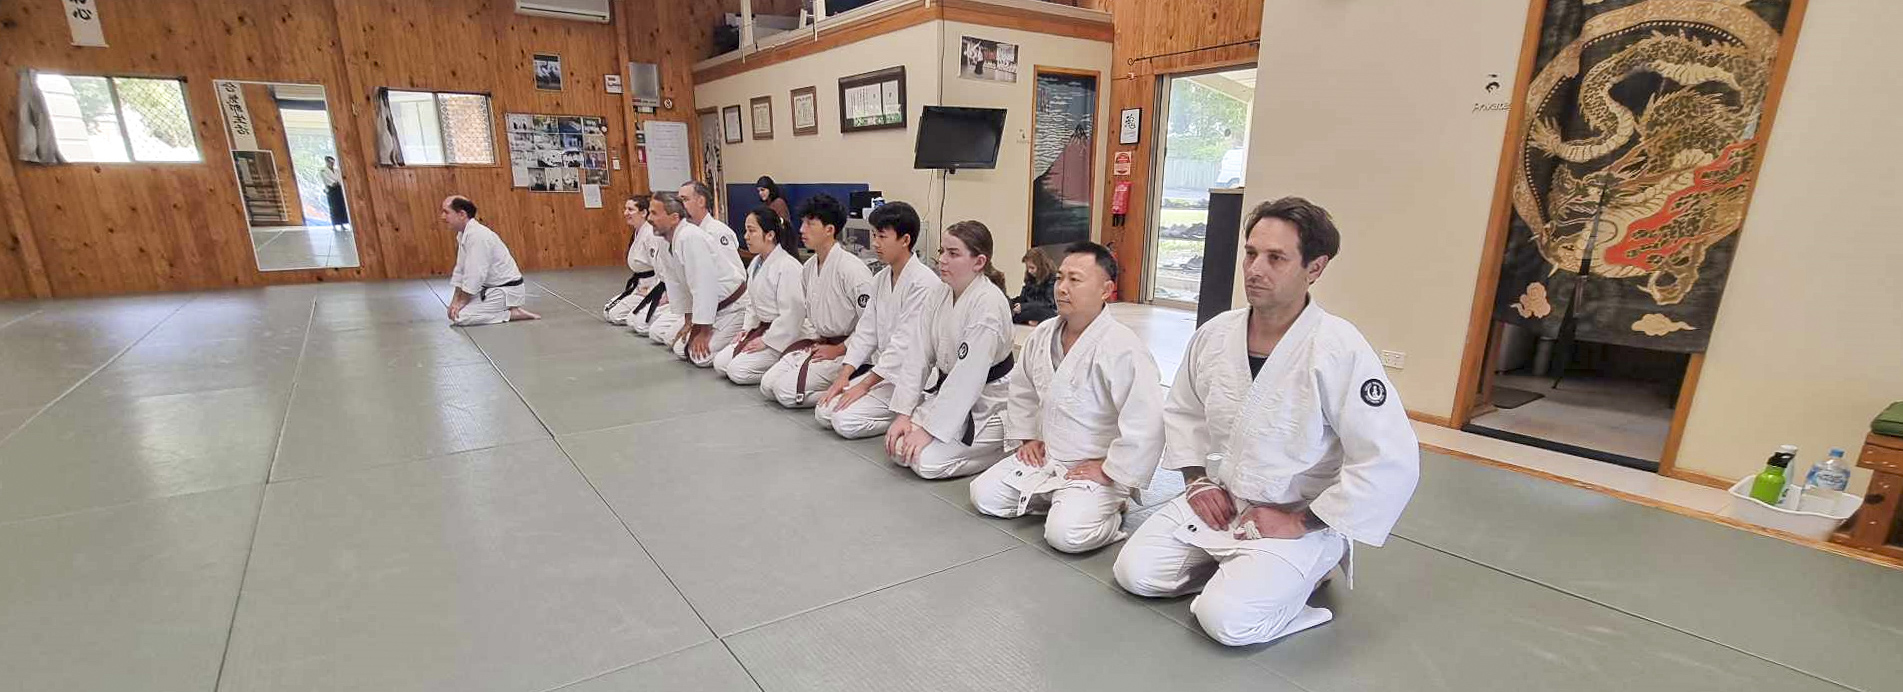 tatami mats in the dojo